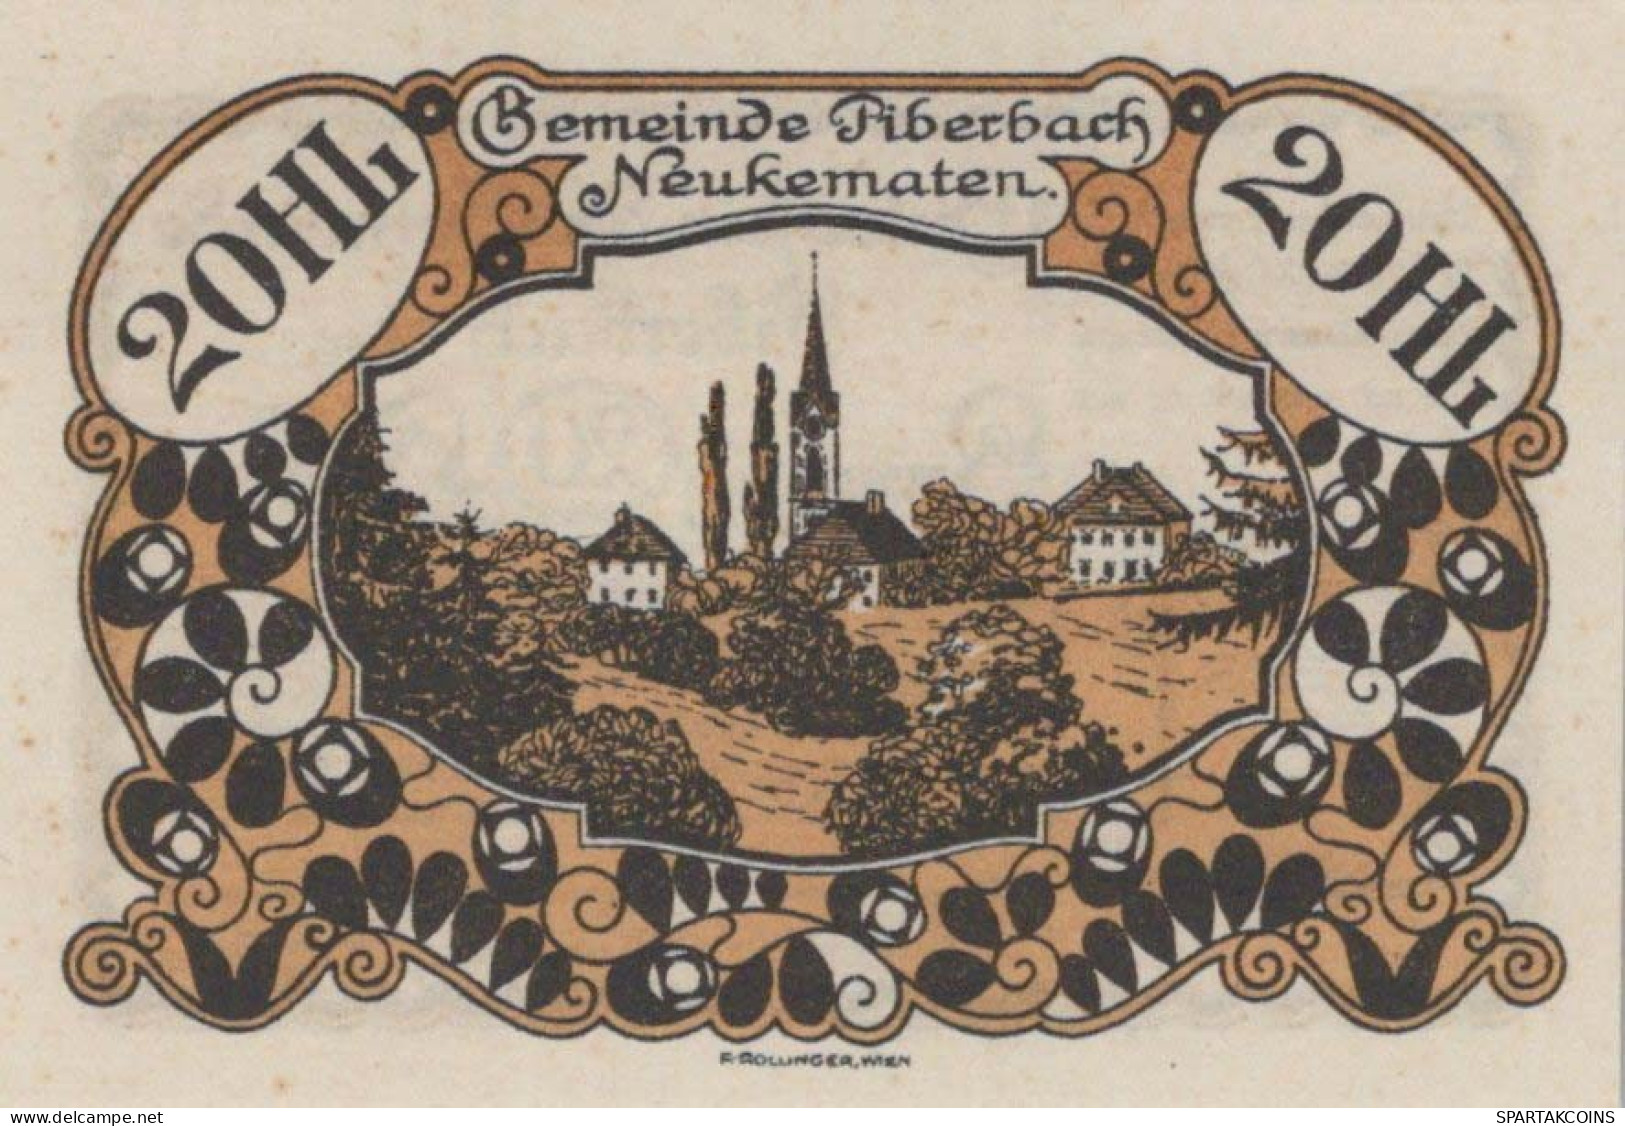 20 HELLER 1920 Stadt PIBERBACH Oberösterreich Österreich Notgeld Papiergeld Banknote #PG619 - Lokale Ausgaben